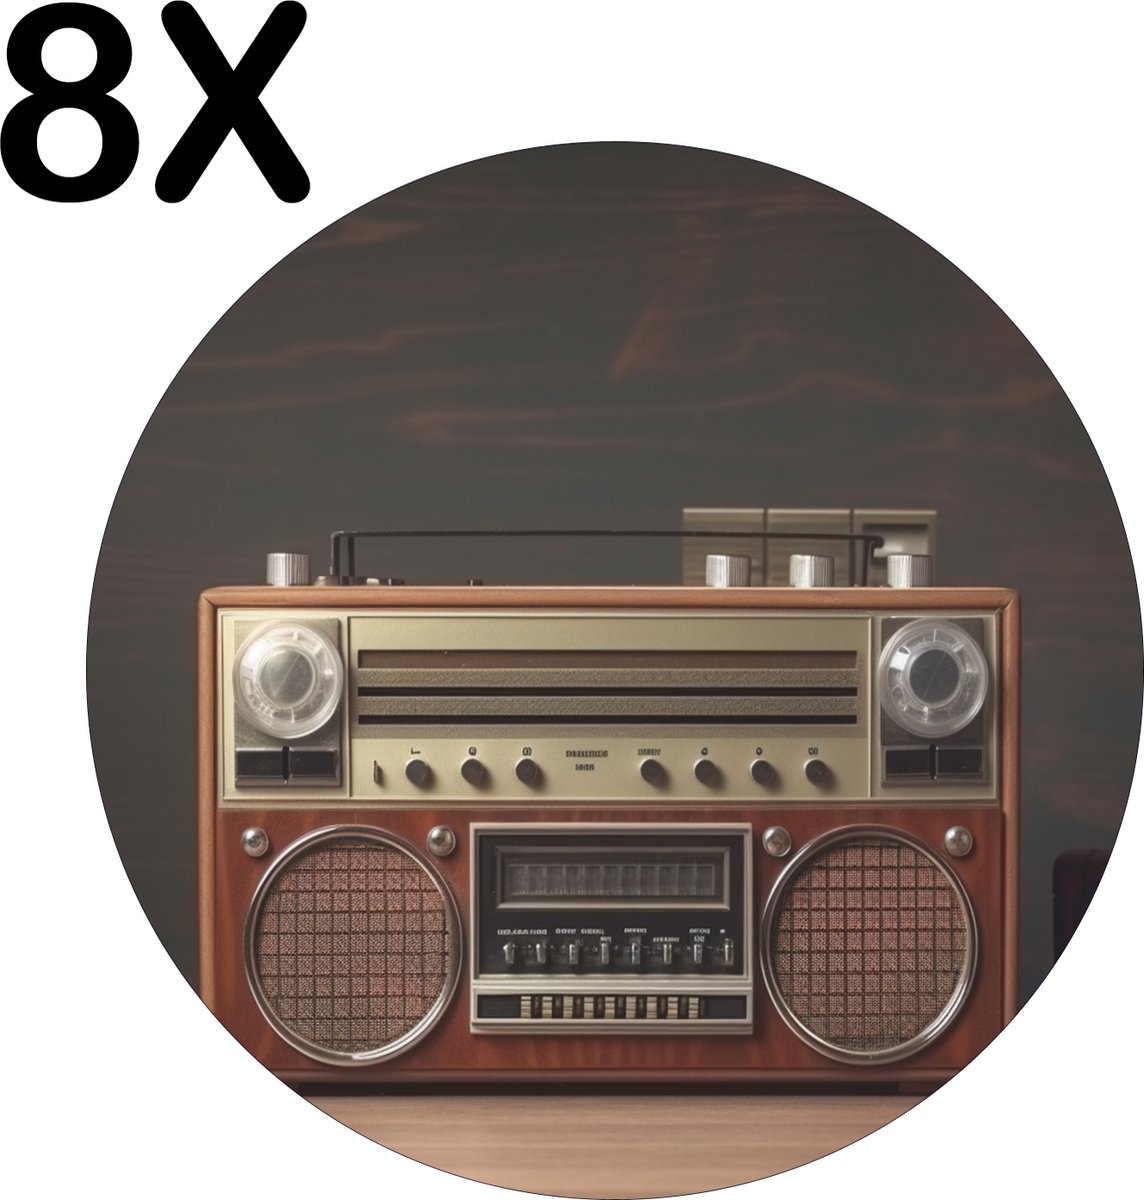 BWK Stevige Ronde Placemat - Vintage Radio met Donkere Achtergrond - Set van 8 Placemats - 50x50 cm - 1 mm dik Polystyreen - Afneembaar